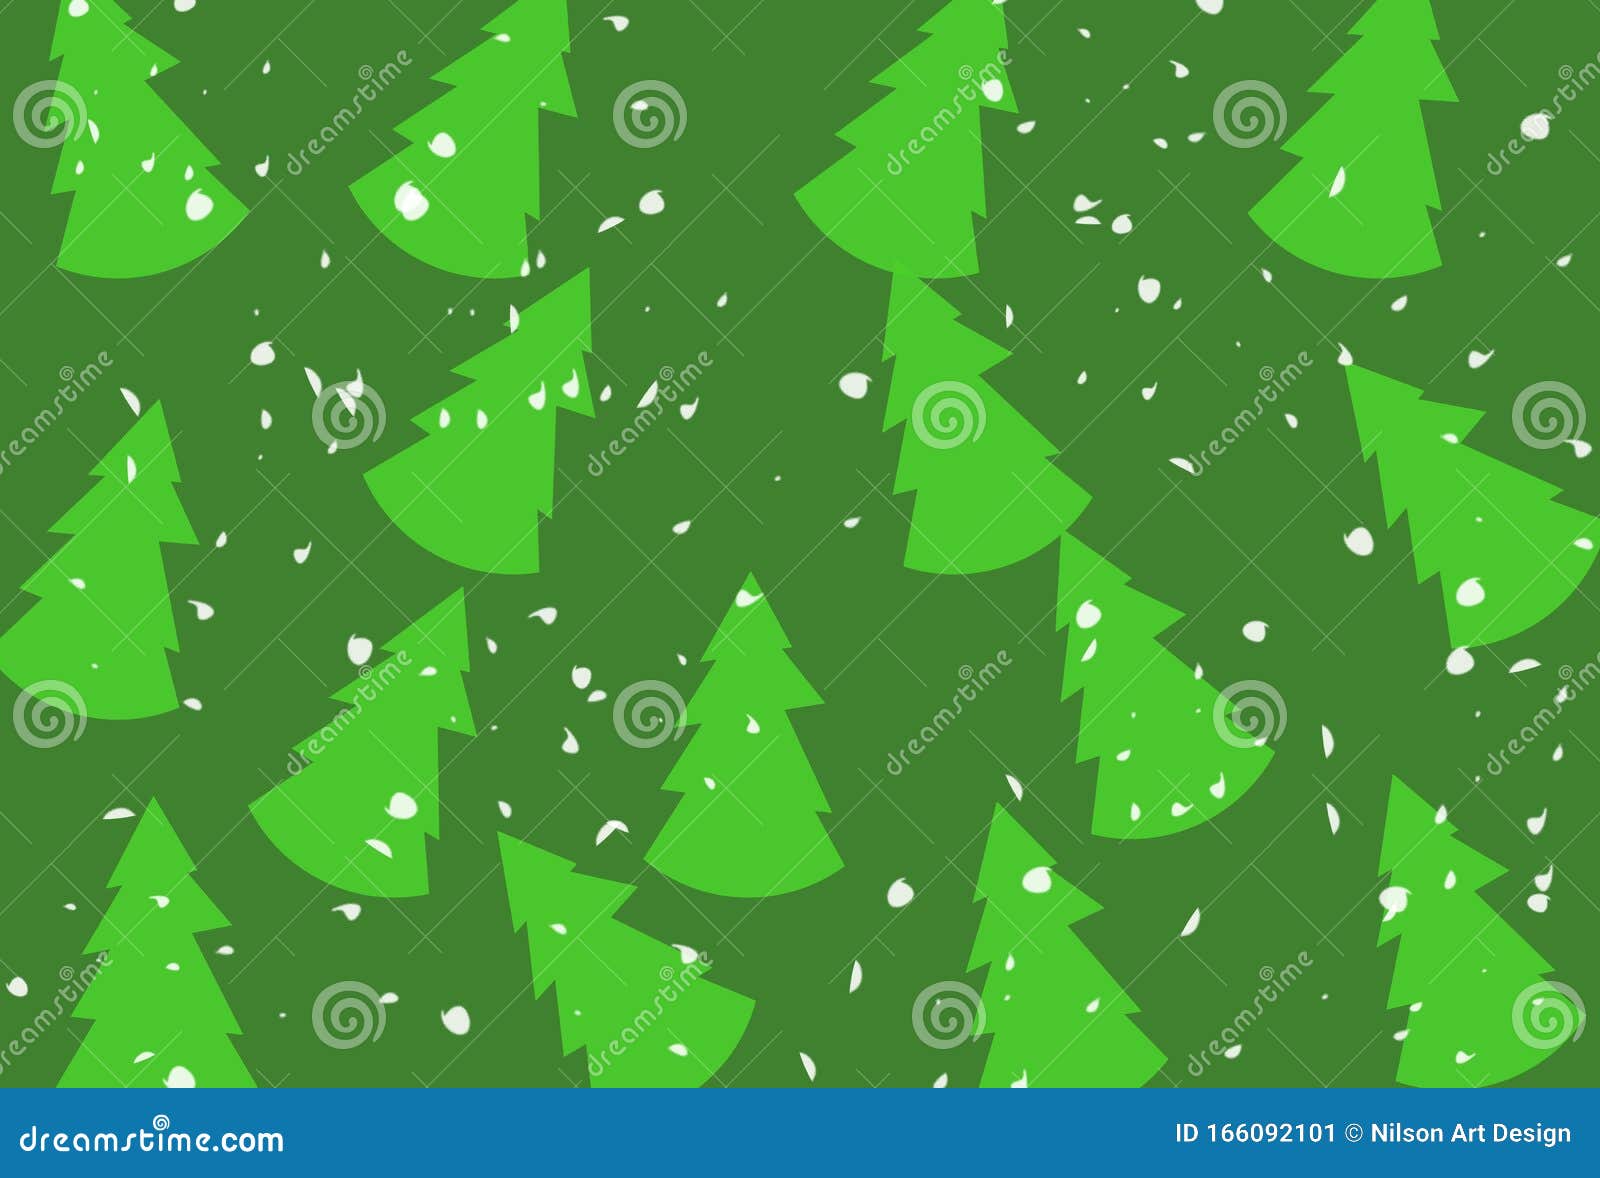 Nền cây thông Giáng sinh: Cùng đến với không khí se lạnh và chuẩn bị cho lễ hội Giáng sinh đang đến gần. Hãy tận hưởng không gian âm nhạc yên bình cùng nền cây thông Giáng sinh đầy ấn tượng và sống động.